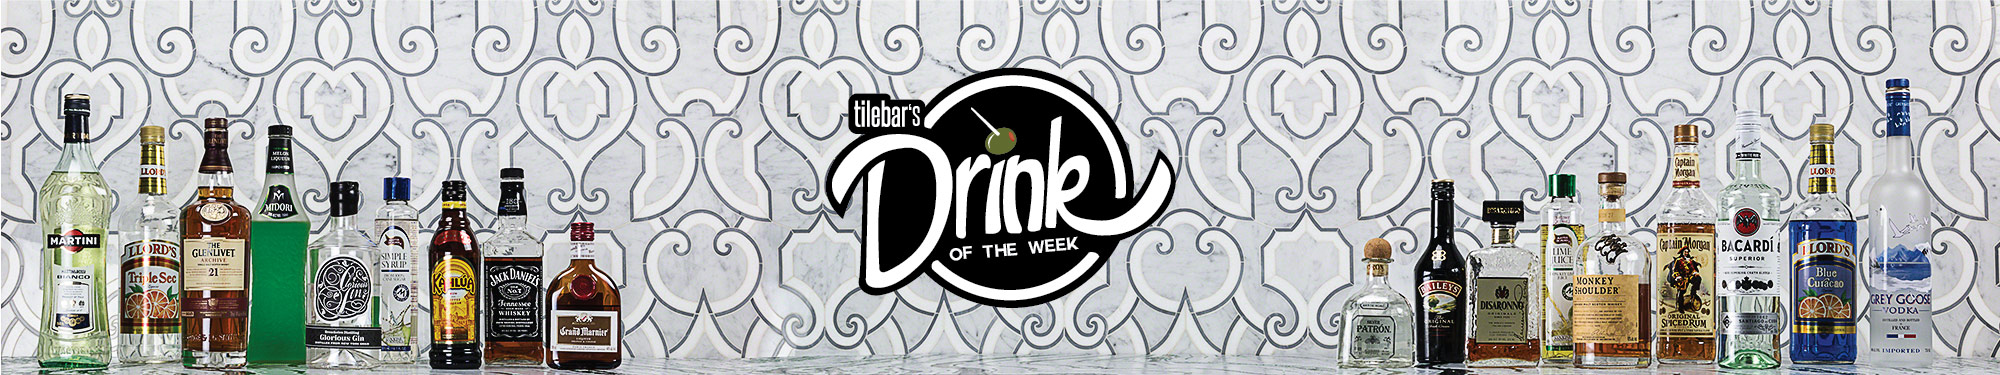 Drink of the Week